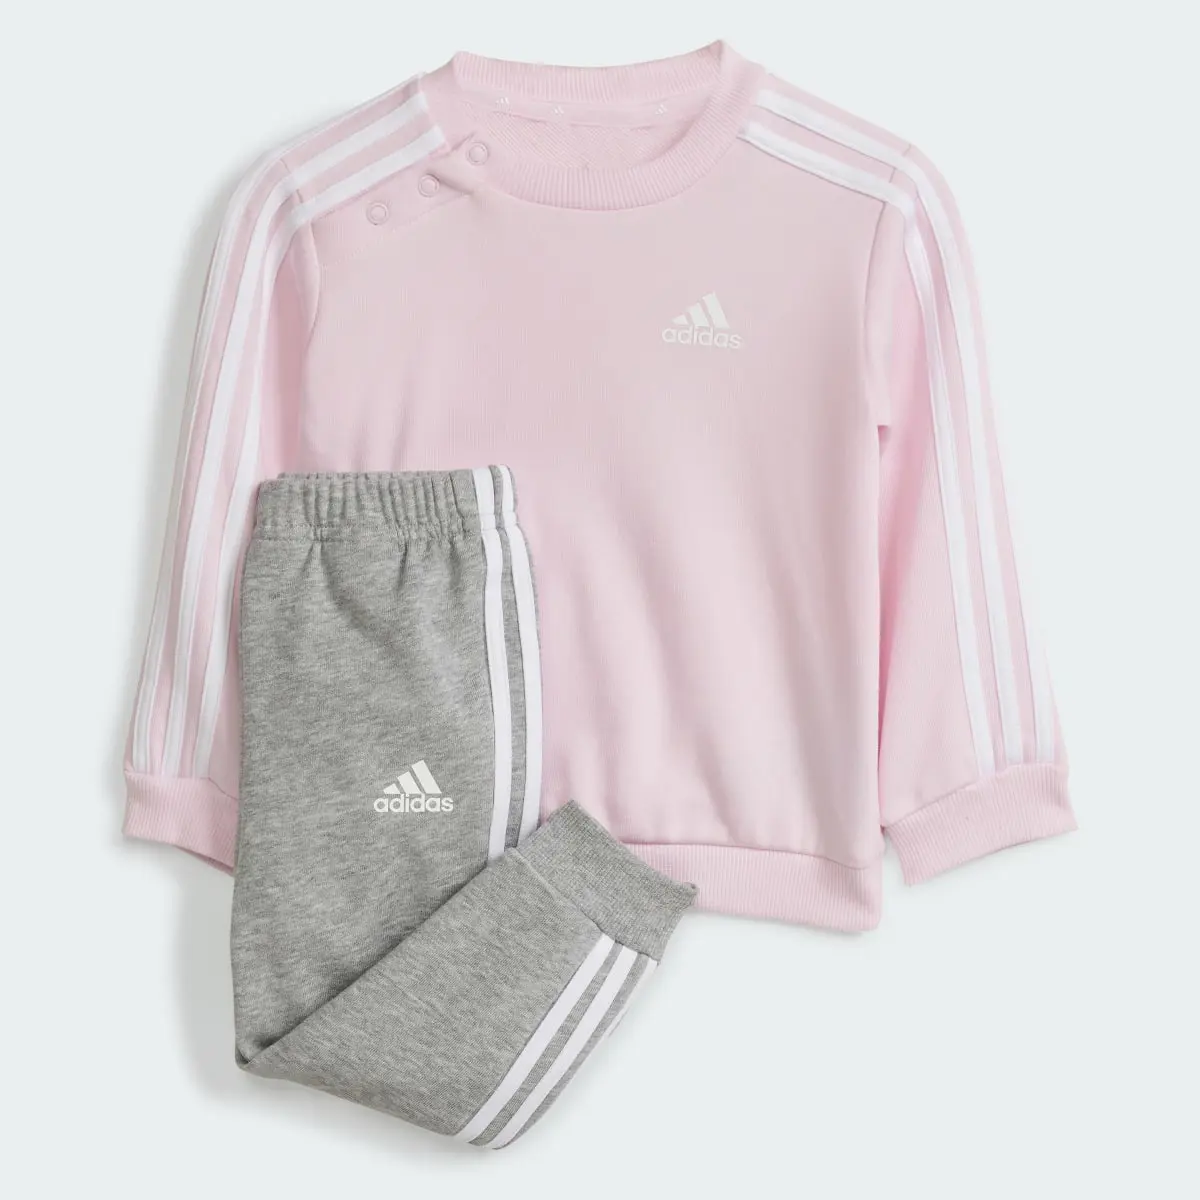 Adidas Tuta Essentials 3-Stripes Jogger Infant. 2